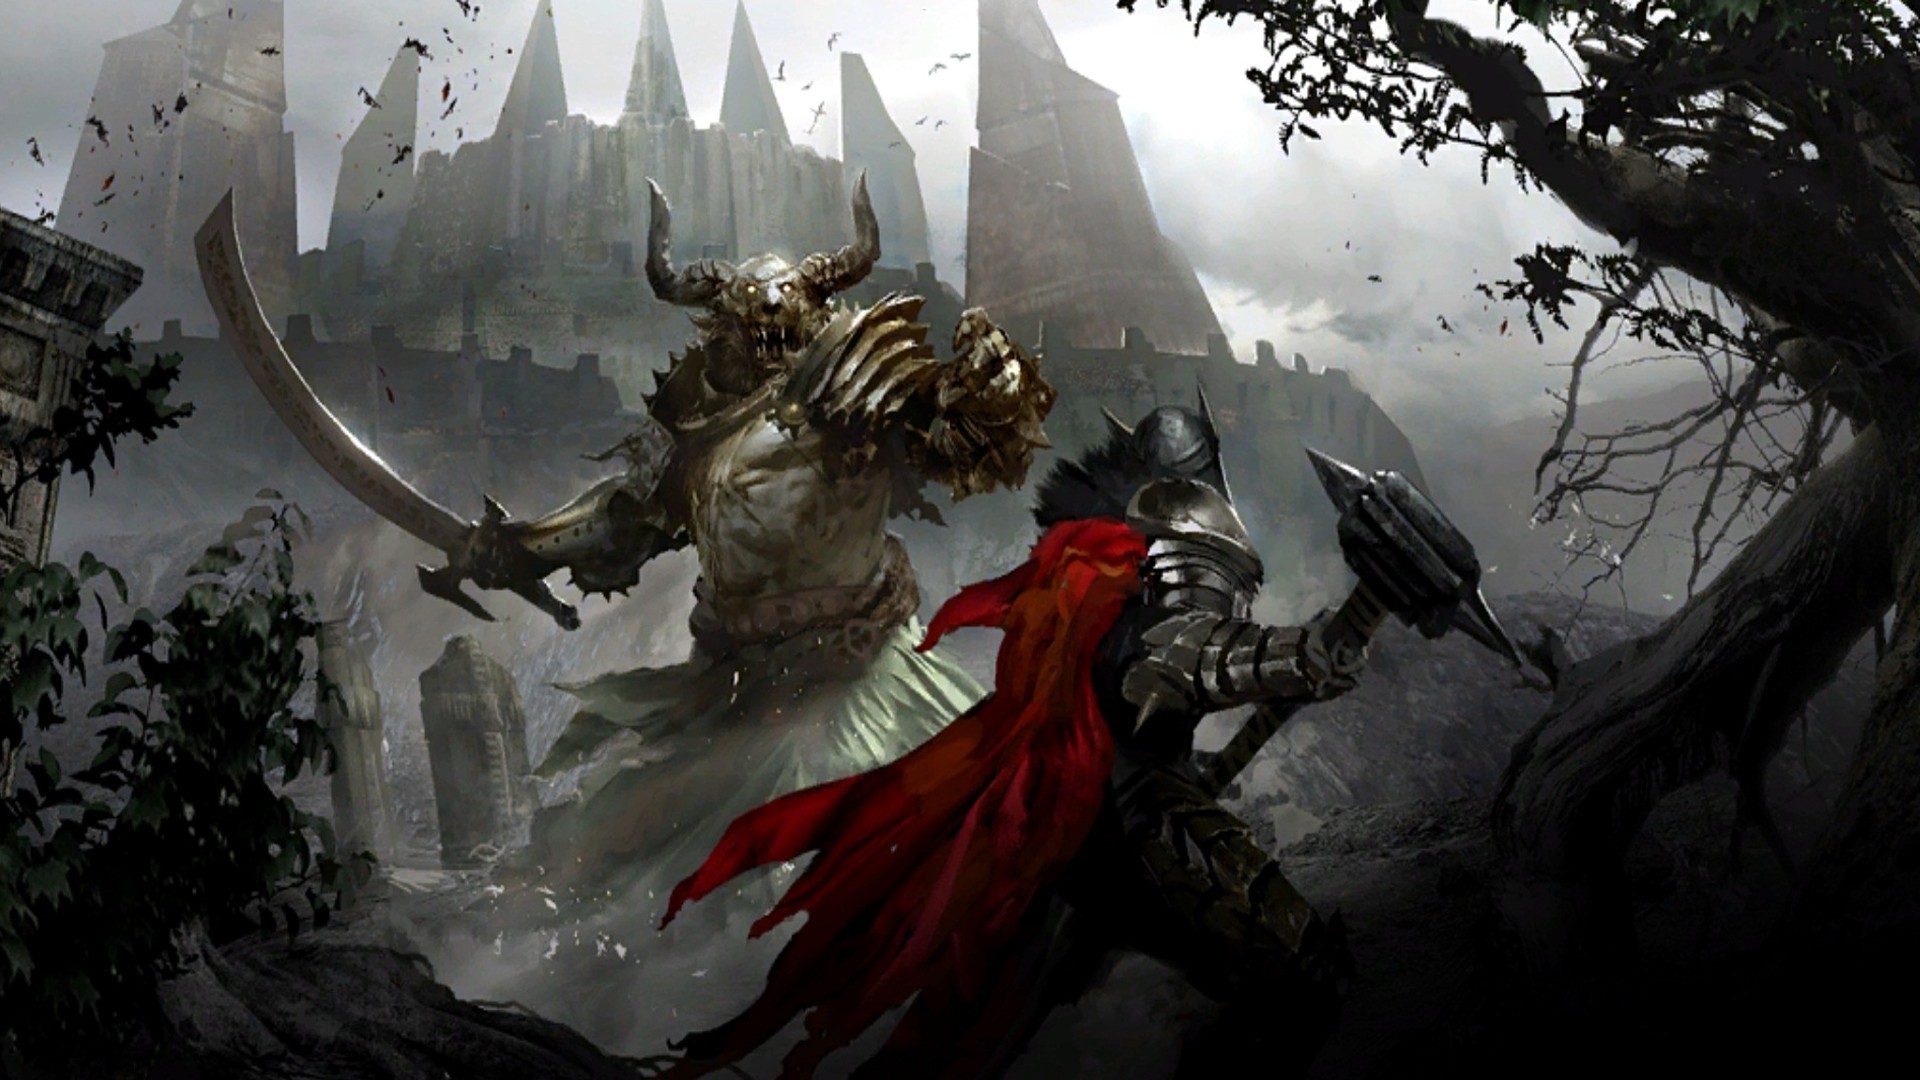 guild guars 2 wallpaper,gioco di avventura e azione,cg artwork,demone,drago,giochi